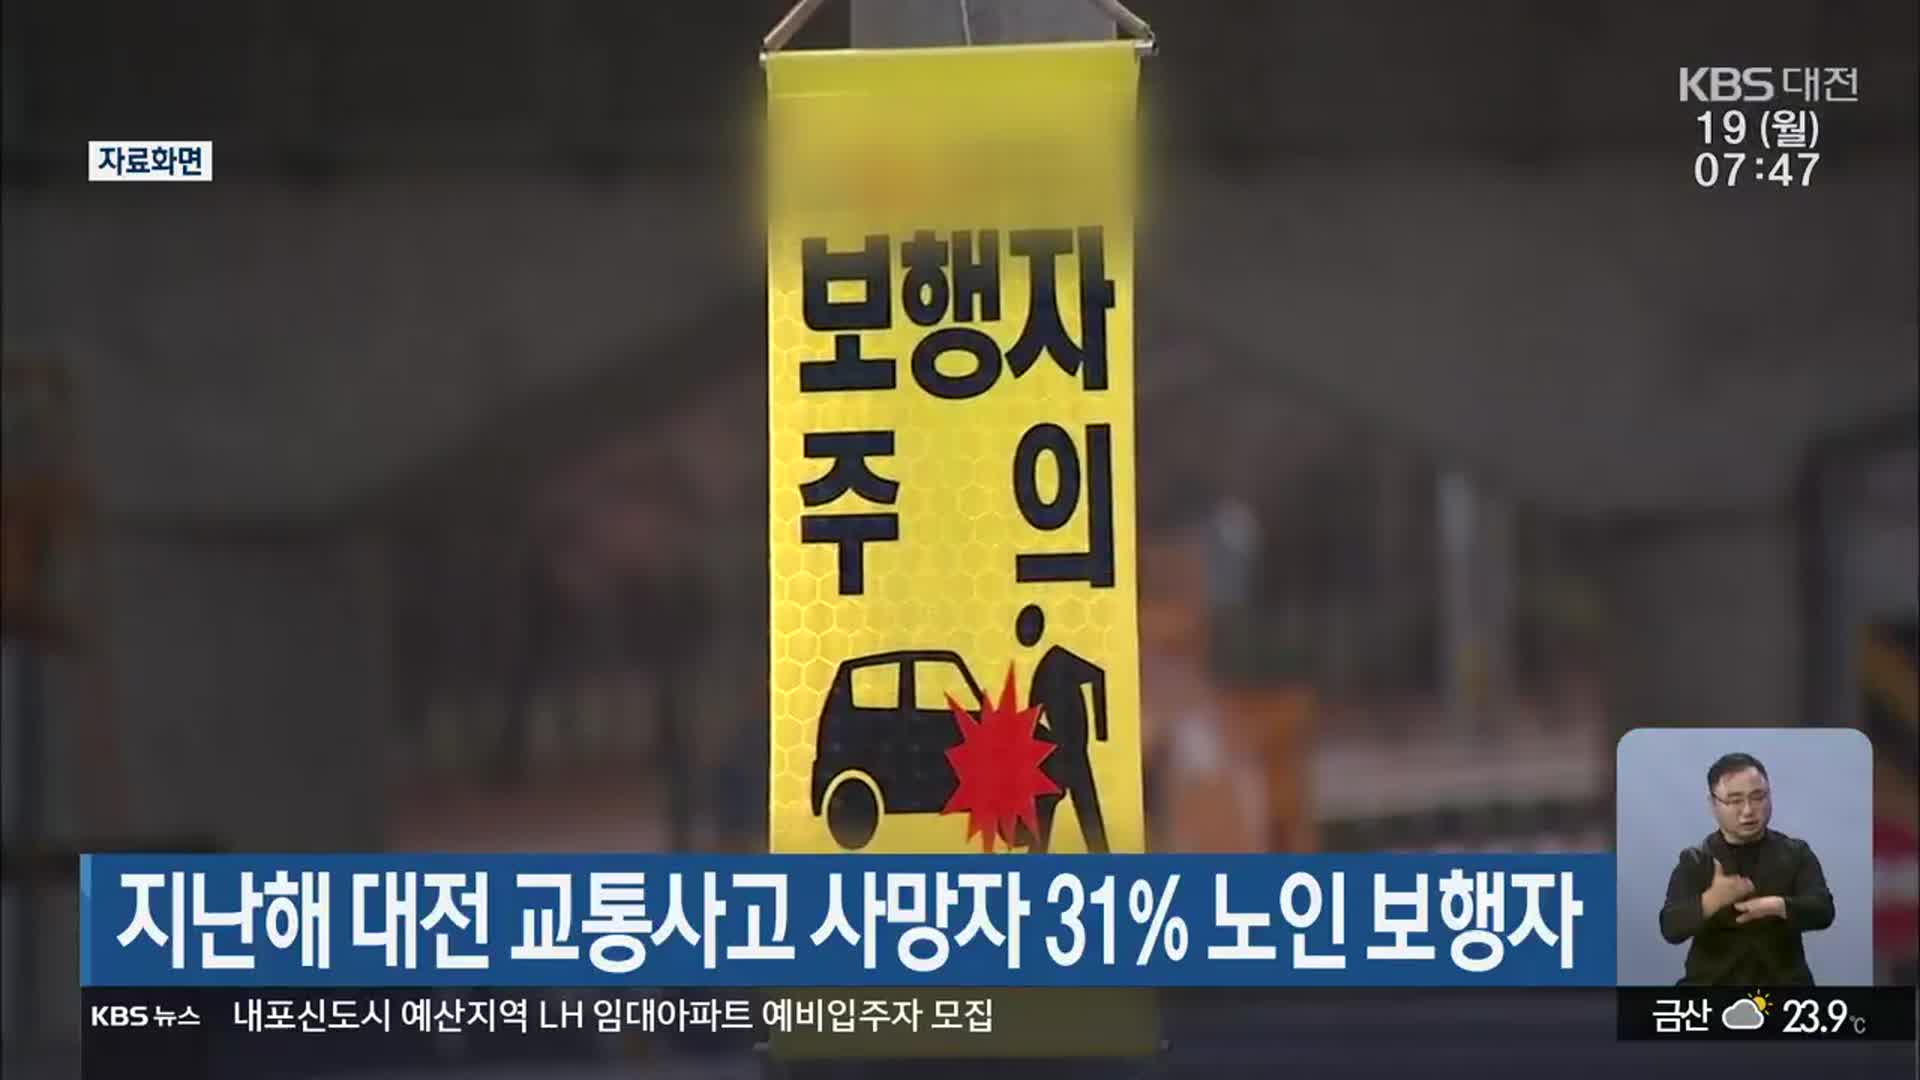 지난해 대전 교통사고 사망자 31% 노인 보행자